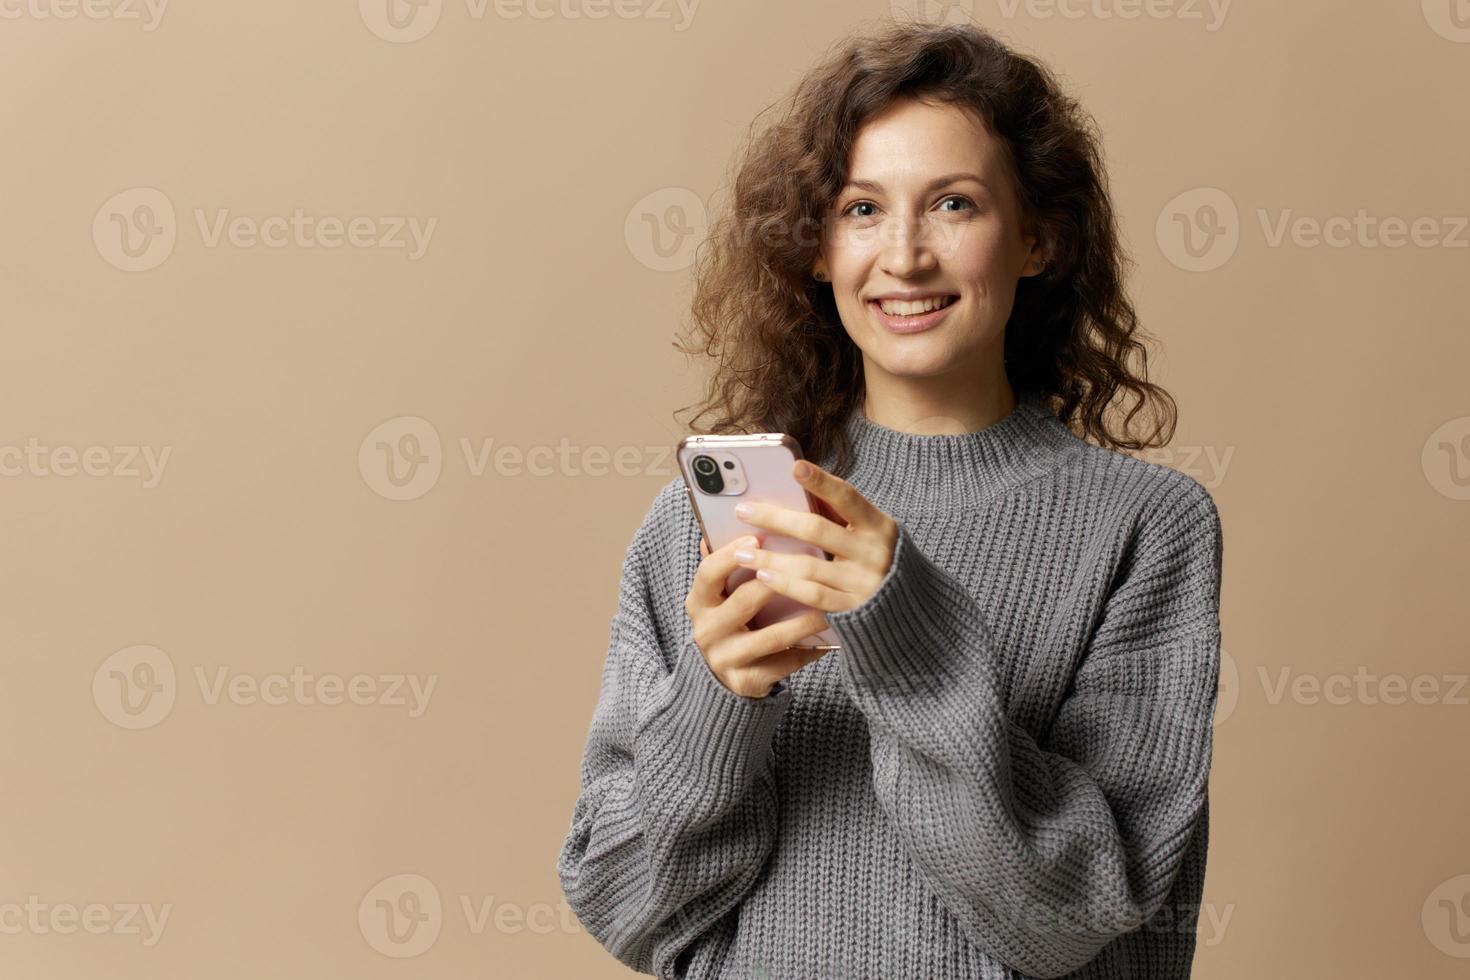 Lycklig lockigt skön lady i grå tillfällig Tröja chattar med pojkvän utseende på kamera Framställ isolerat på beige pastell bakgrund. social media, nätverk, distans kommunikation begrepp. kopia Plats foto